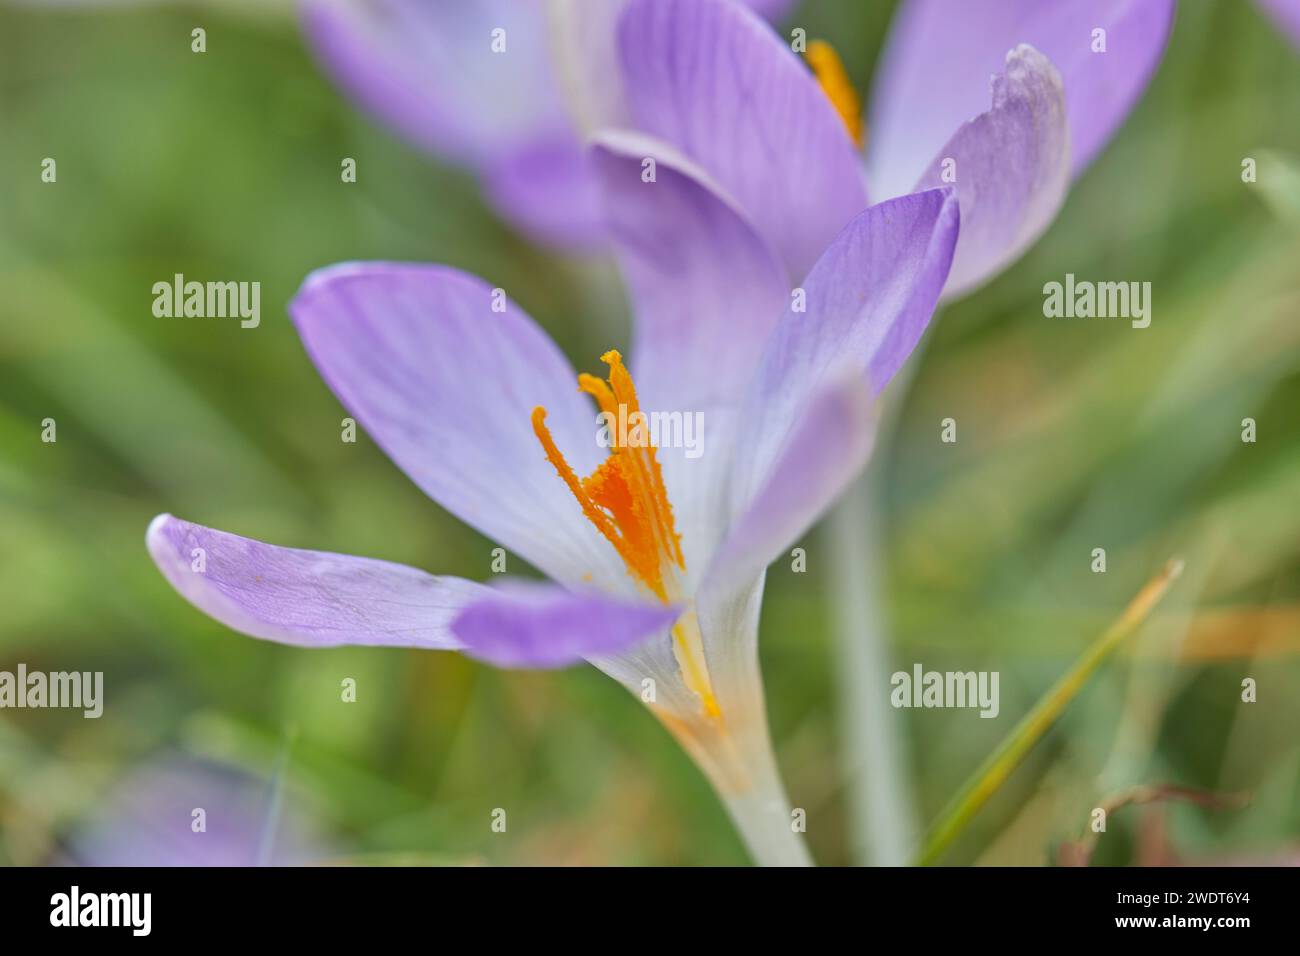 Crocus pourpre en fleur au début du printemps, une des premières fleurs à annoncer l'arrivée du printemps, dans le Devon, Angleterre, Royaume-Uni, Europe Banque D'Images